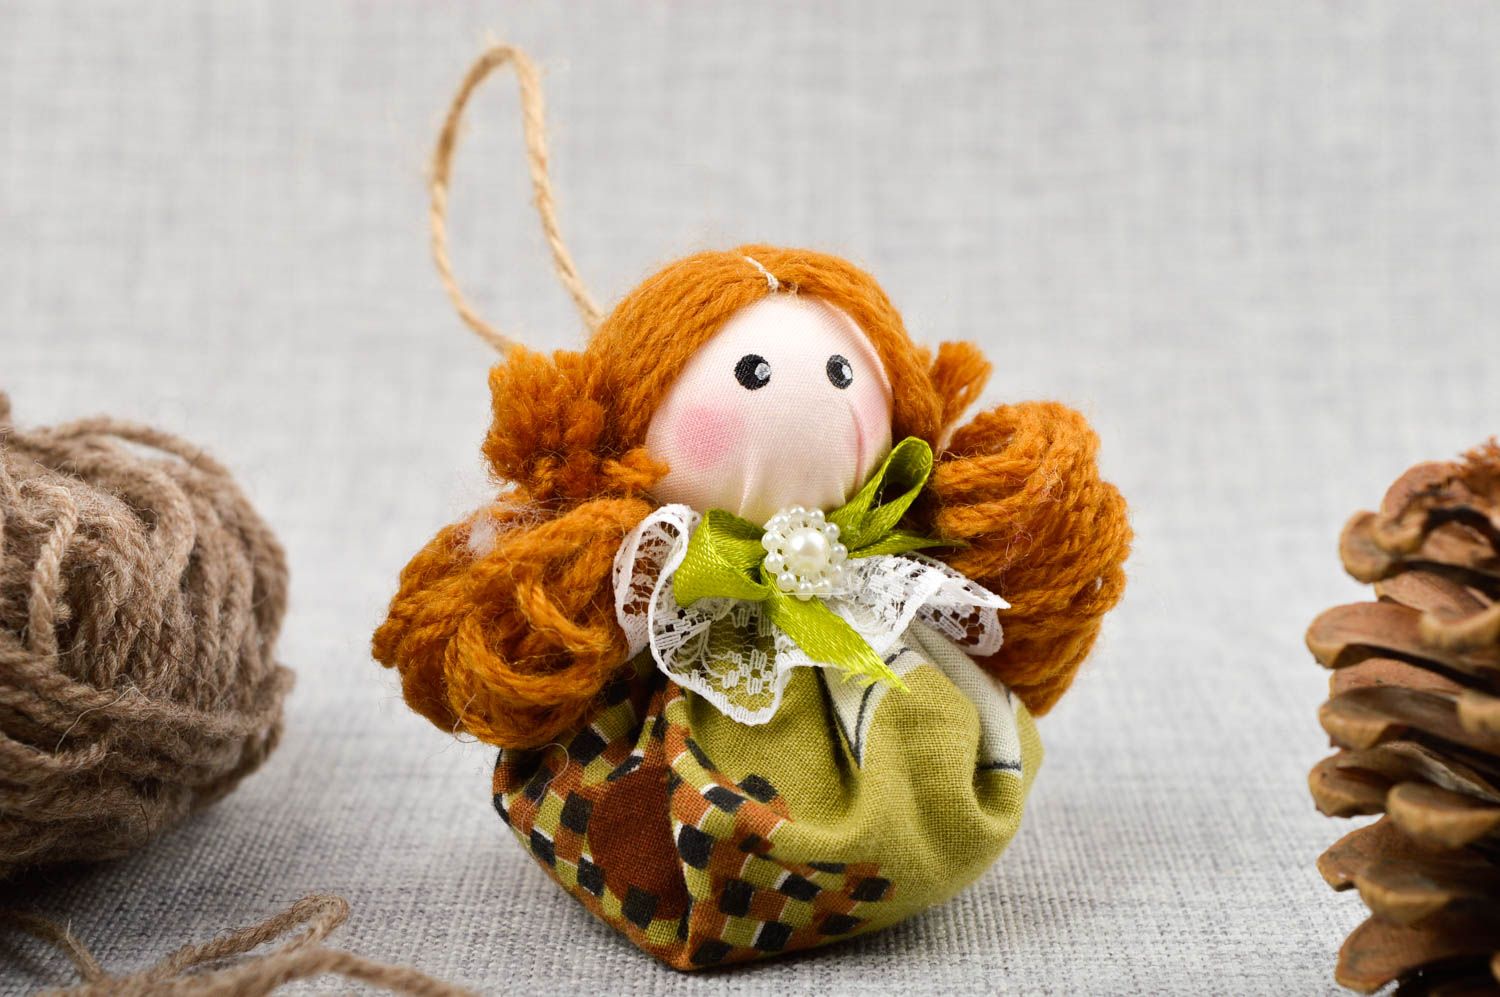 Muñeca de trapo hecha a mano juguete decorativo de tela decoración de hogar foto 1